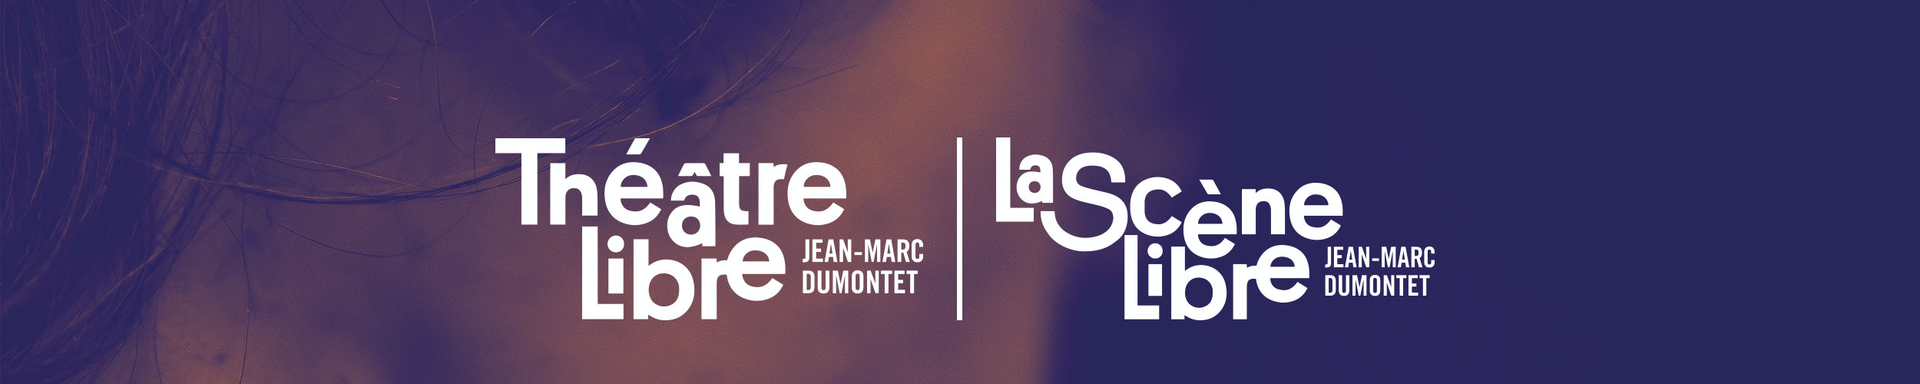 Bandeau ''Théâtre Libre'' ''La Scène Libre'' - Jean-Marc Dumontet Production